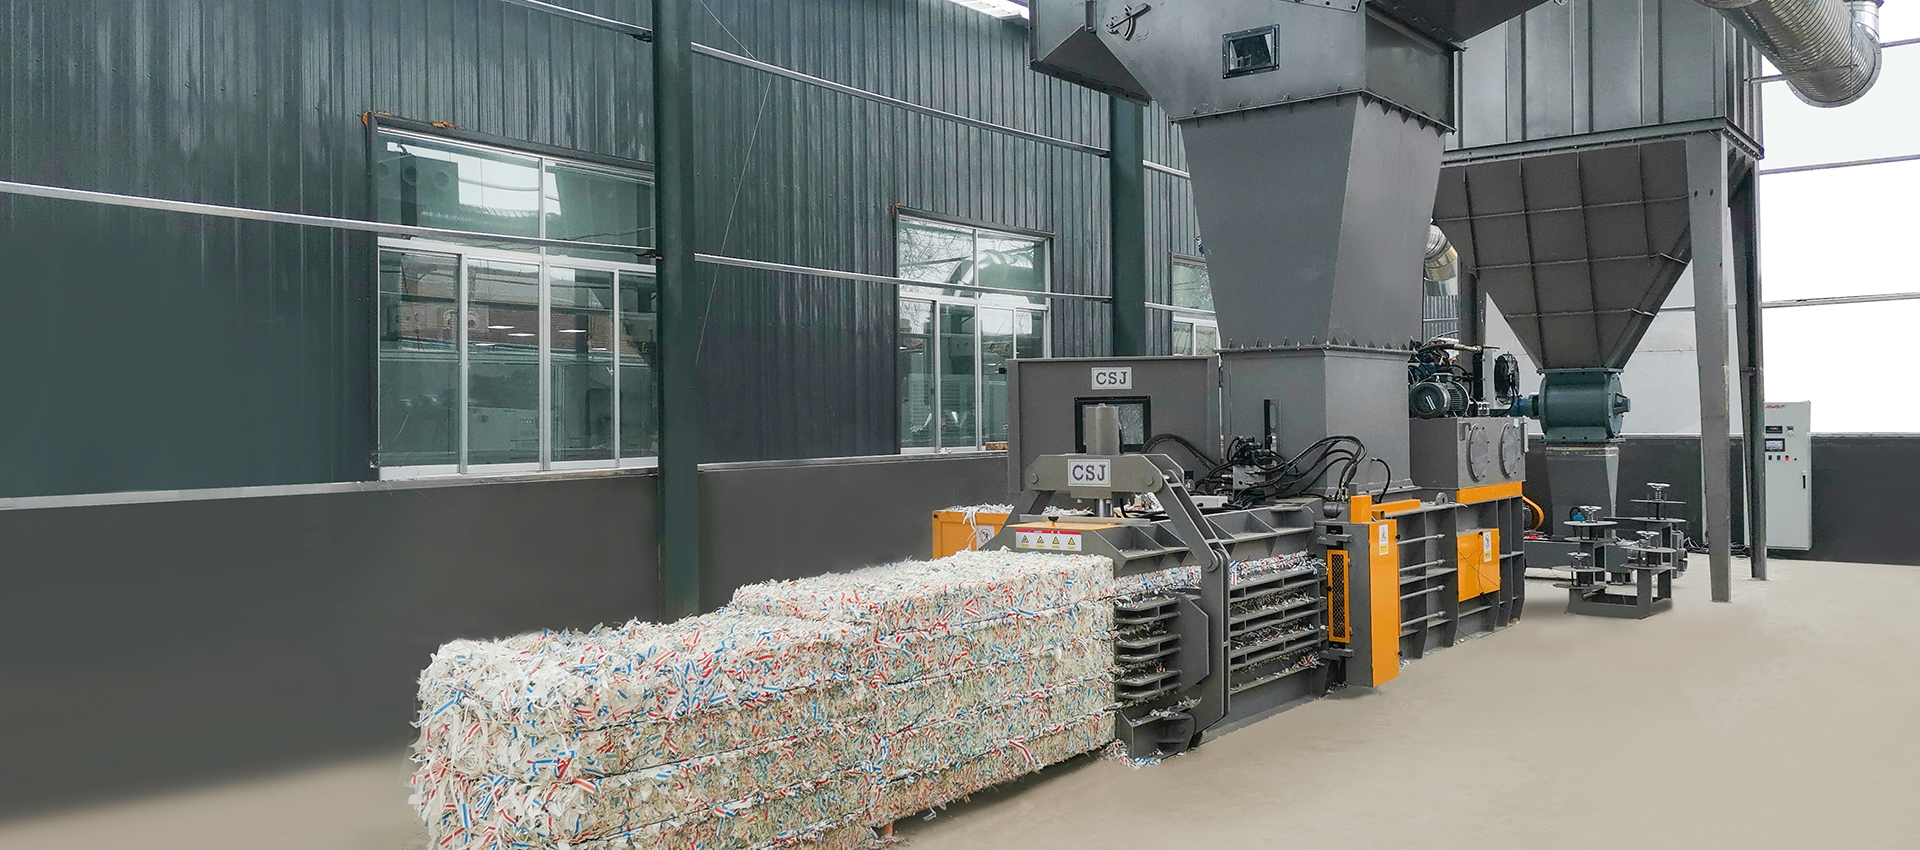 廢紙回收打包行業